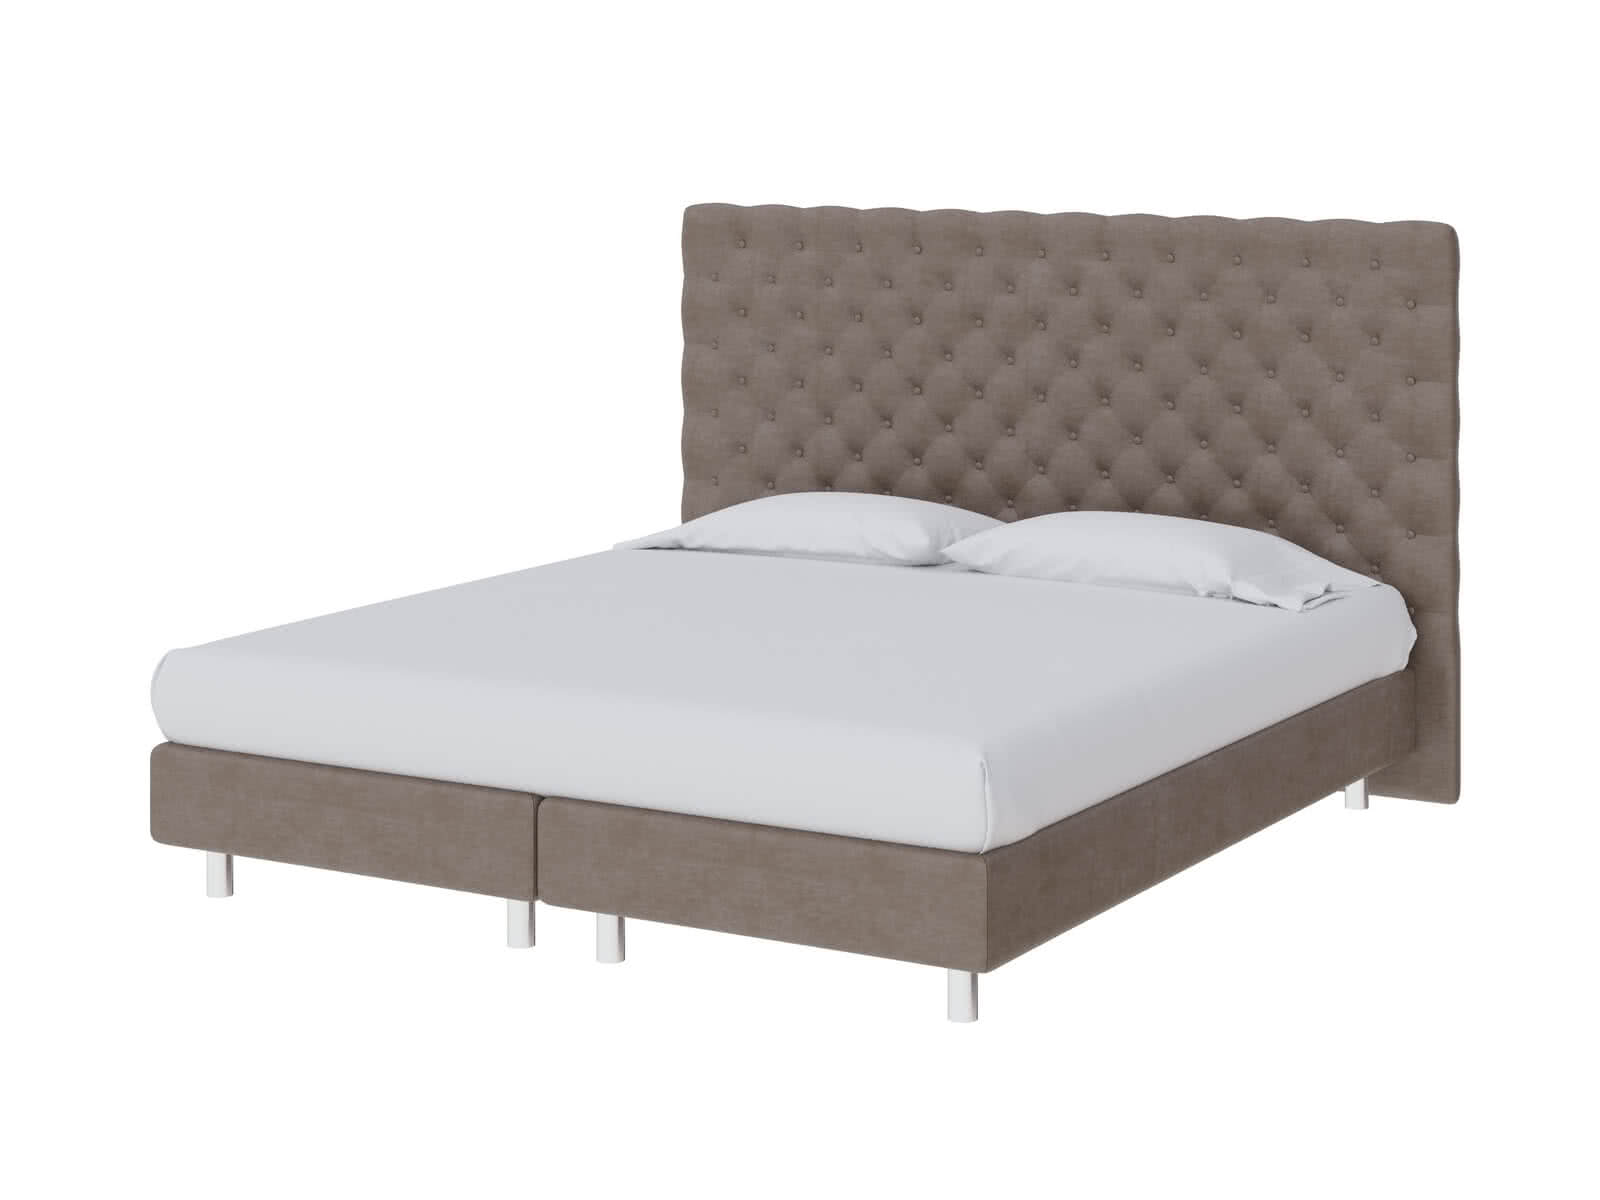 Купить кровать ProSon Кровать ProSon Europe Paris Lift, Лофти Лён 200 х 200 см Лофти Лён дешево на официальном сайте